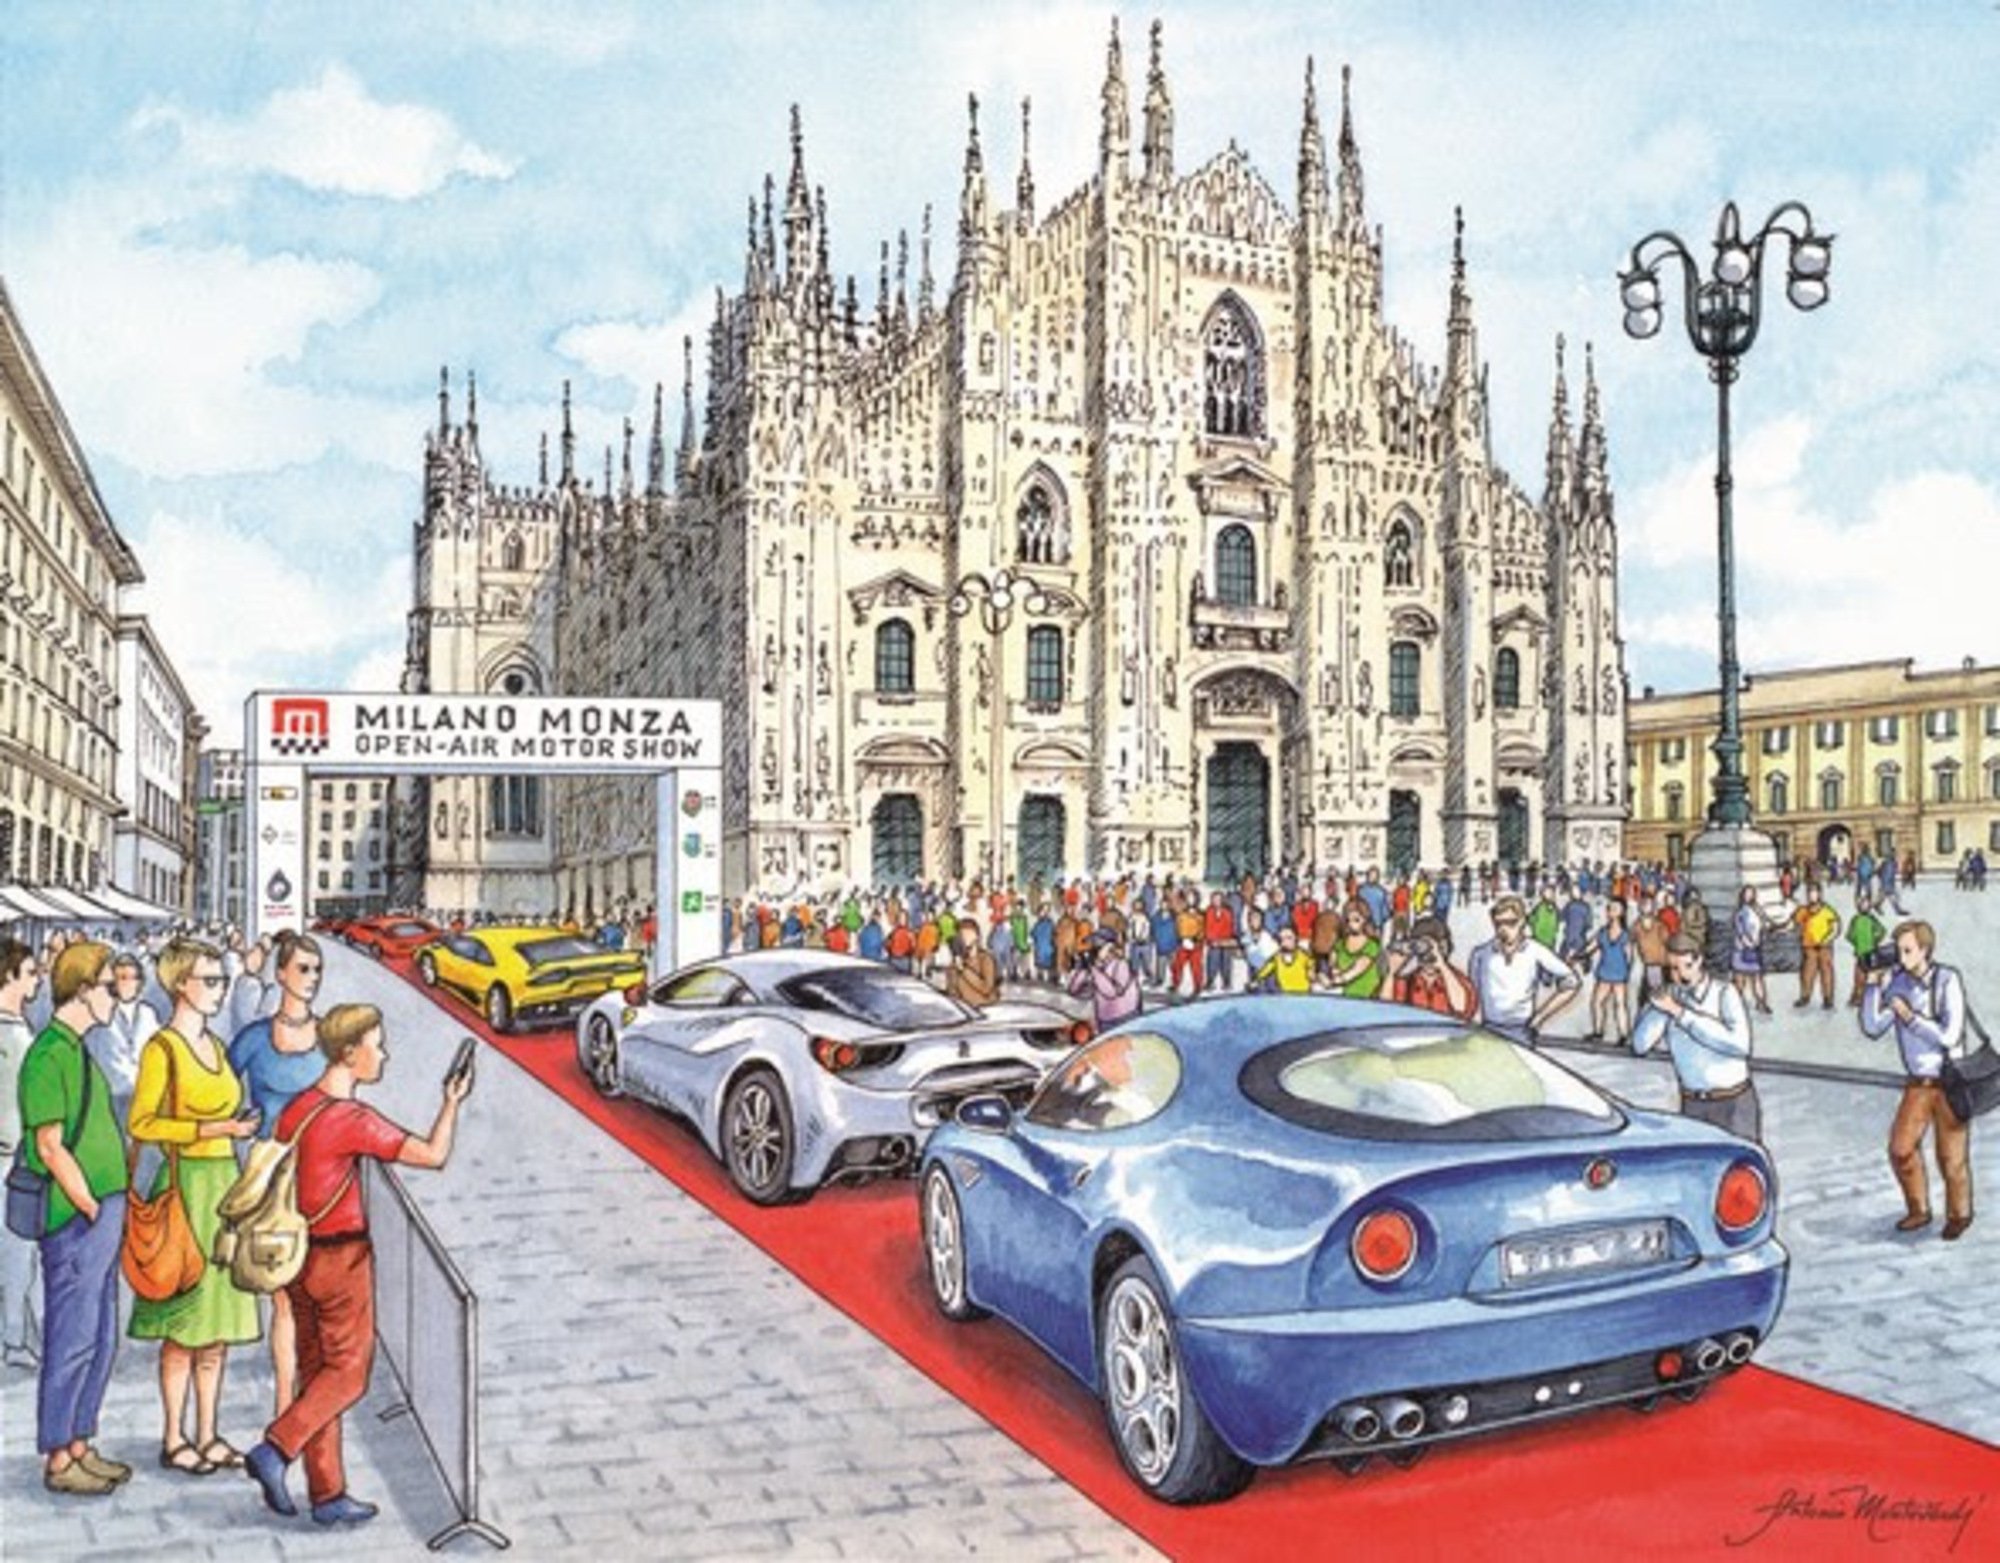 Milano Monza Open-Air Motor Show: dal 18 al 21 giugno 2020